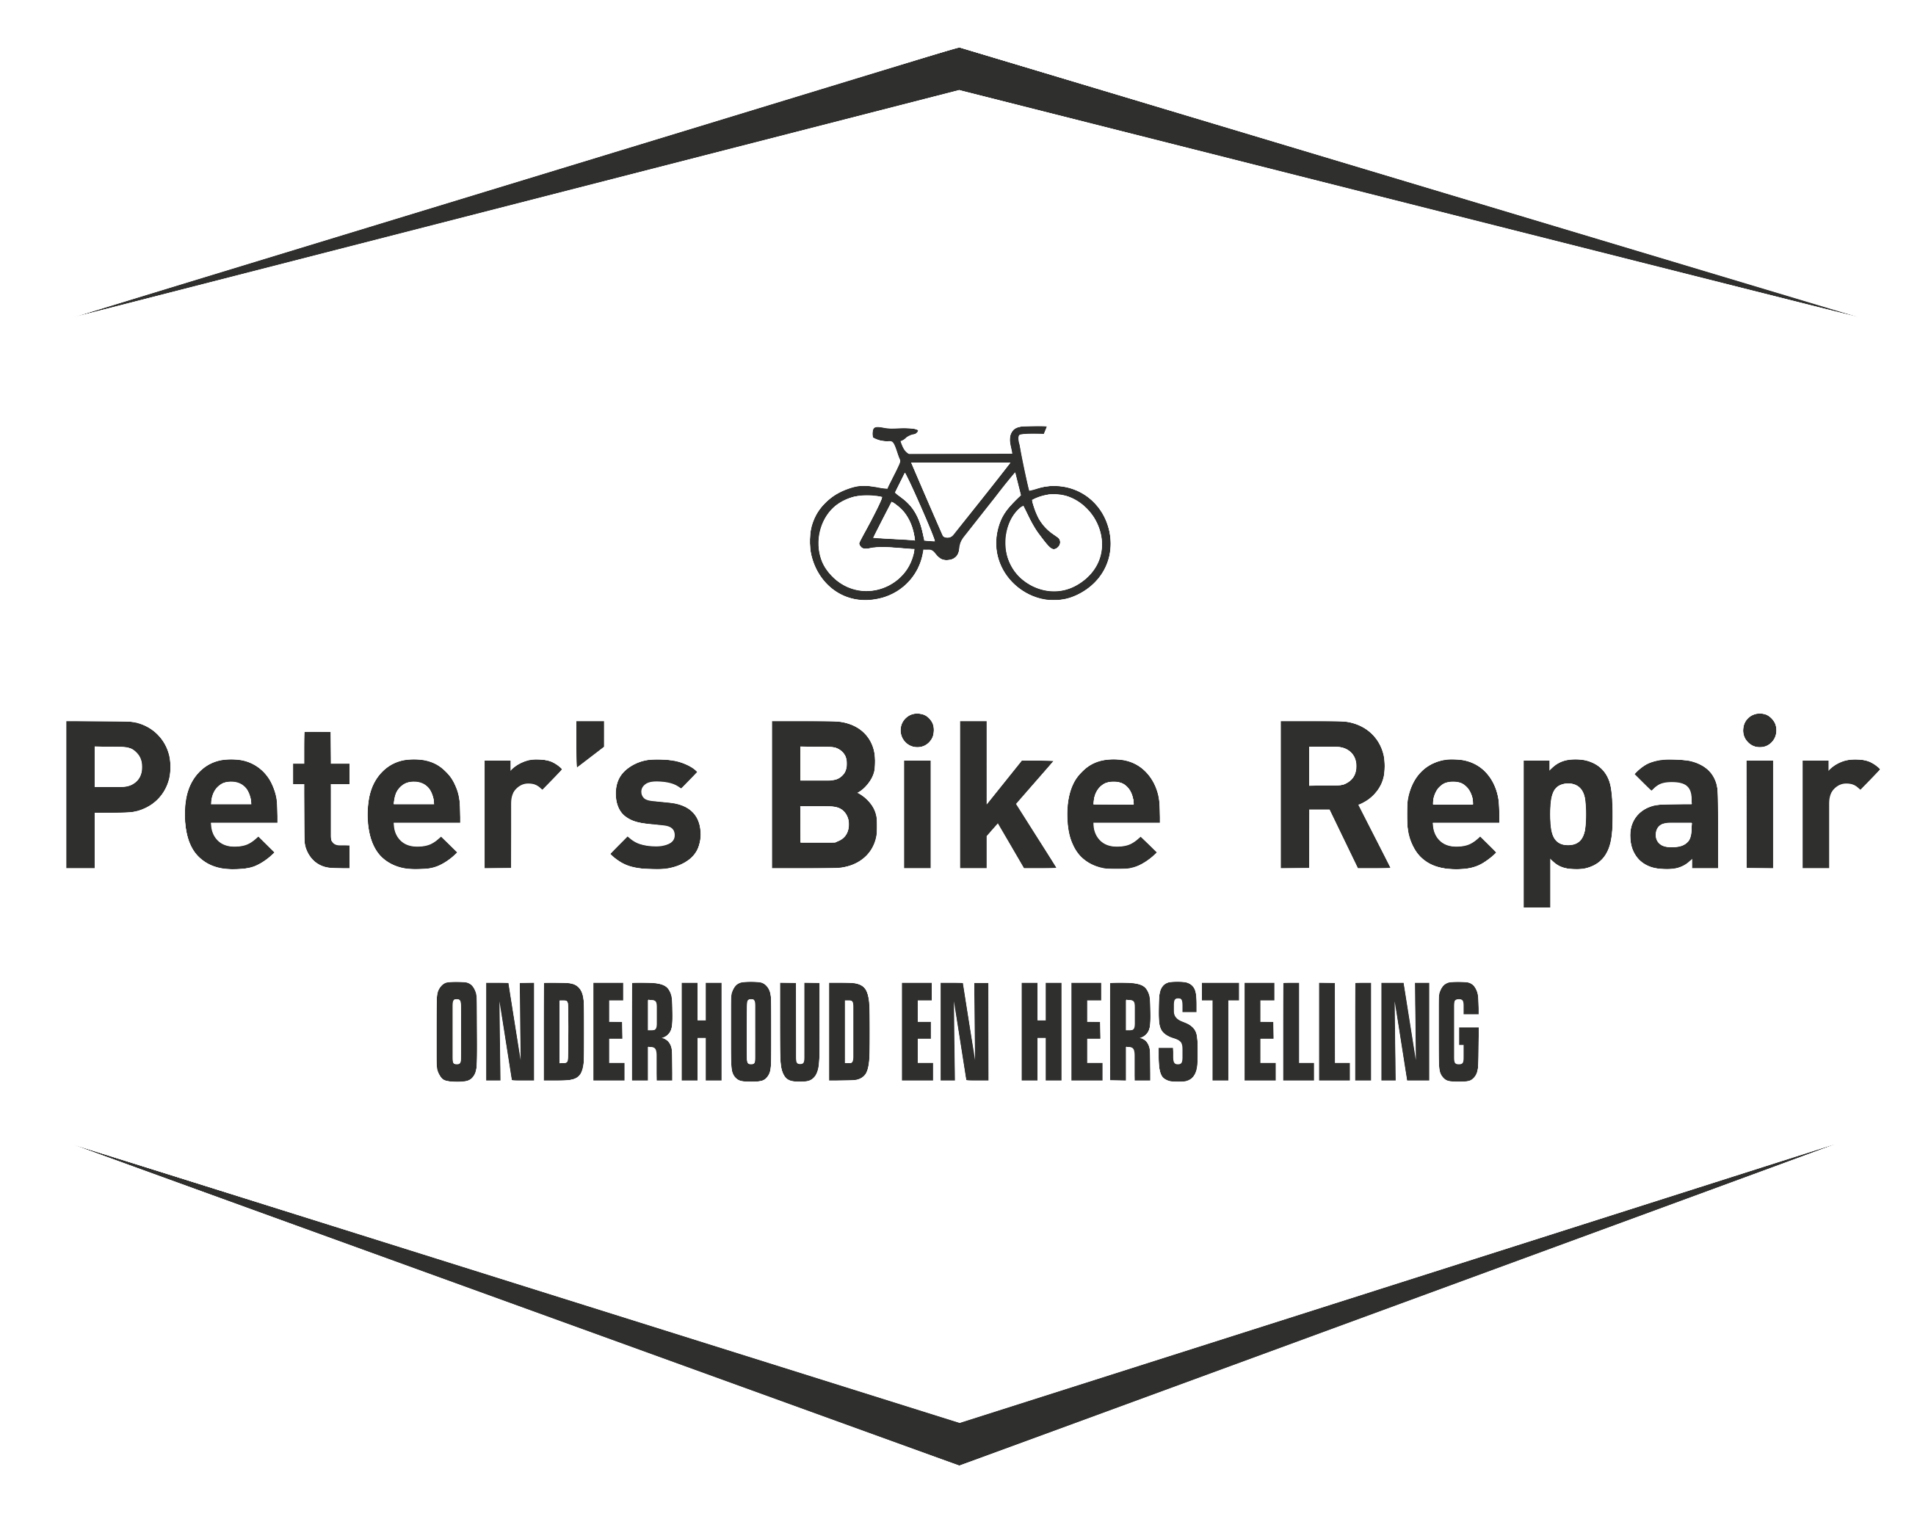 Peter's bike repair